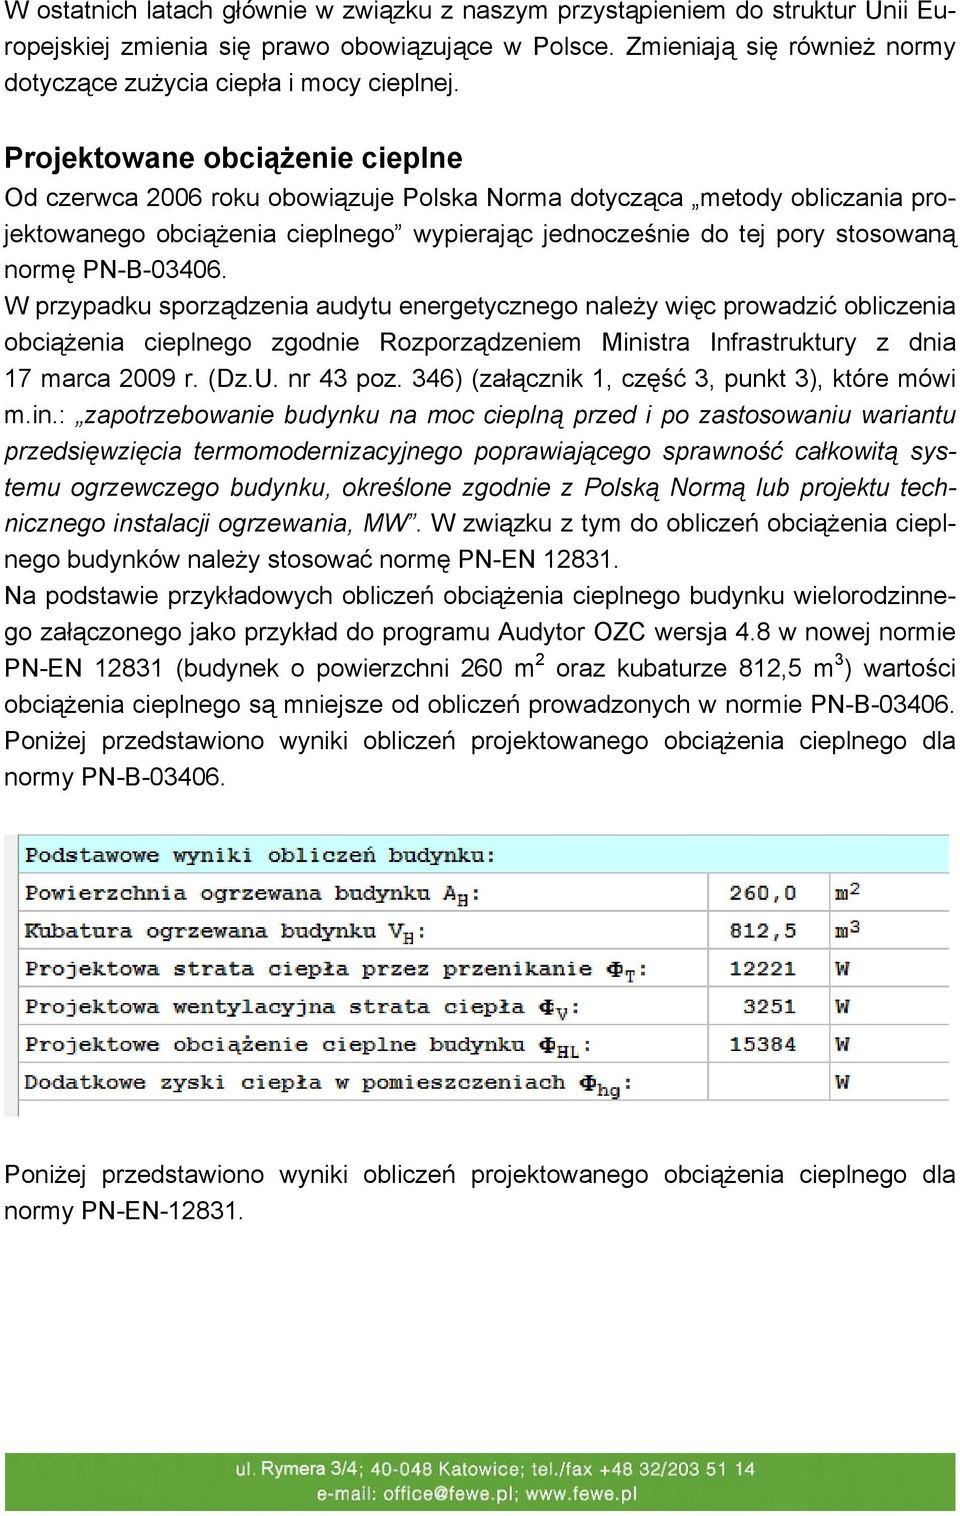 Projektowane obciążenie cieplne Od czerwca 2006 roku obowiązuje Polska Norma dotycząca metody obliczania projektowanego obciążenia cieplnego wypierając jednocześnie do tej pory stosowaną normę